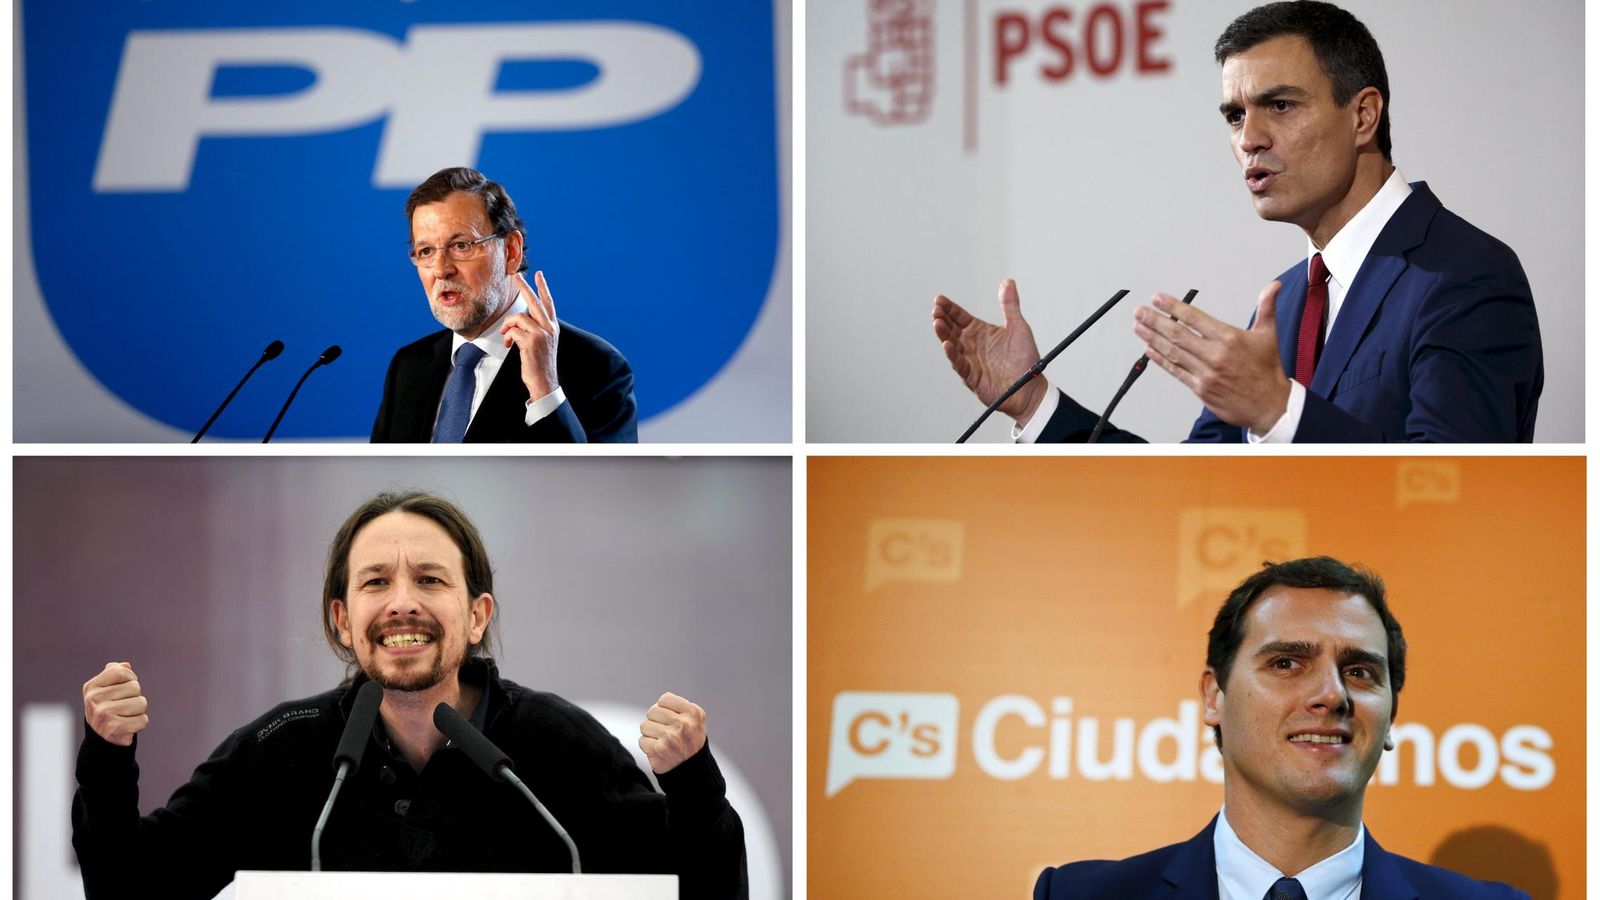 Foto: PP, PSOE, Podemos, Ciudadanos... ¿con qué red social compararías a cada partido? Foto: Reuters/Albert Gea/Paul Hanna/Eloy Alonso/Andrea Comas.